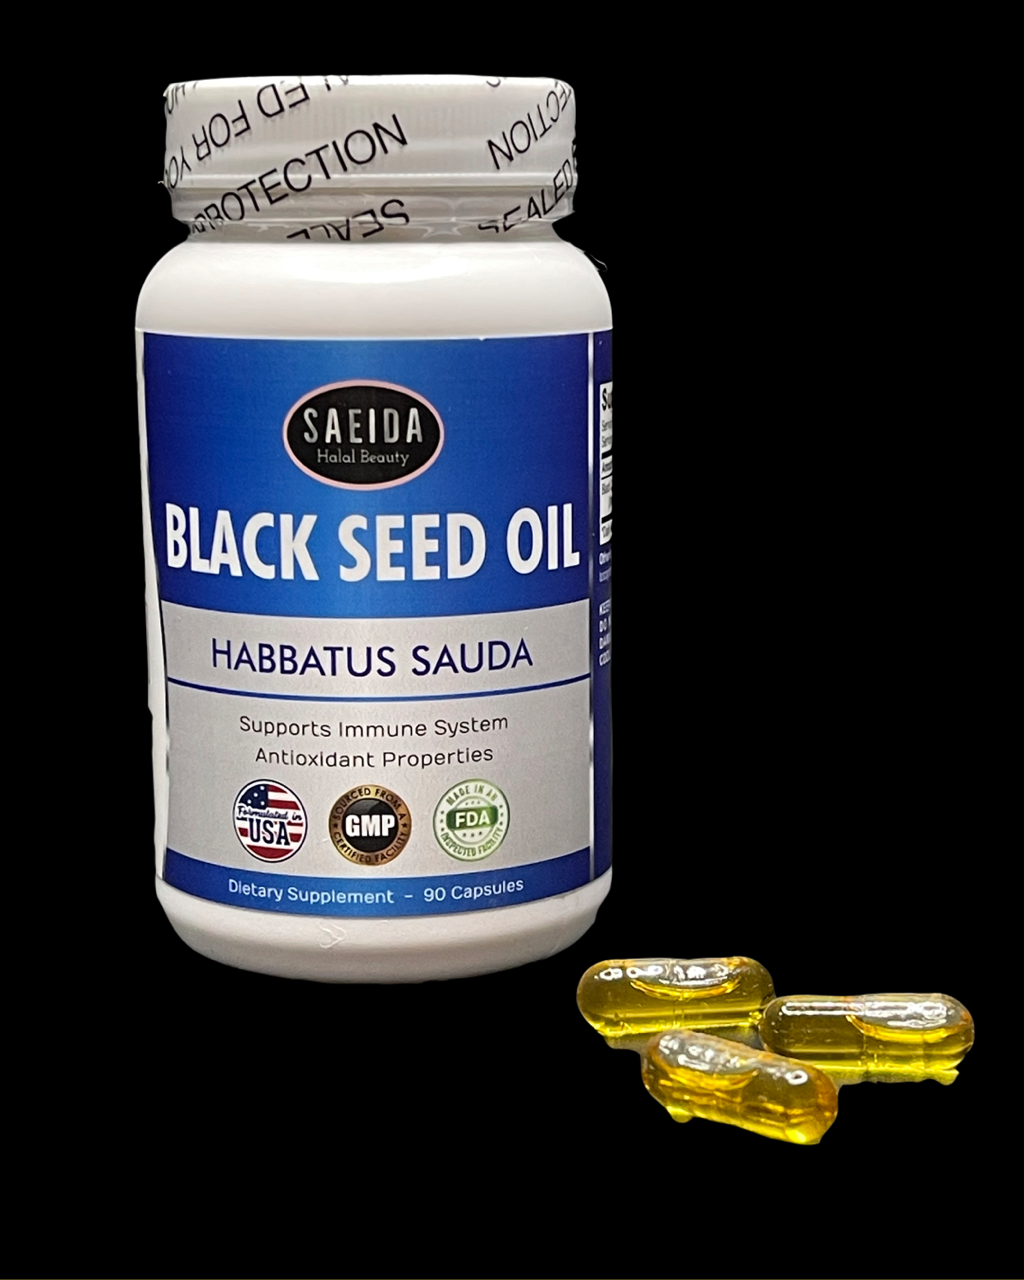 Black seed oil - Habbatus Sauda